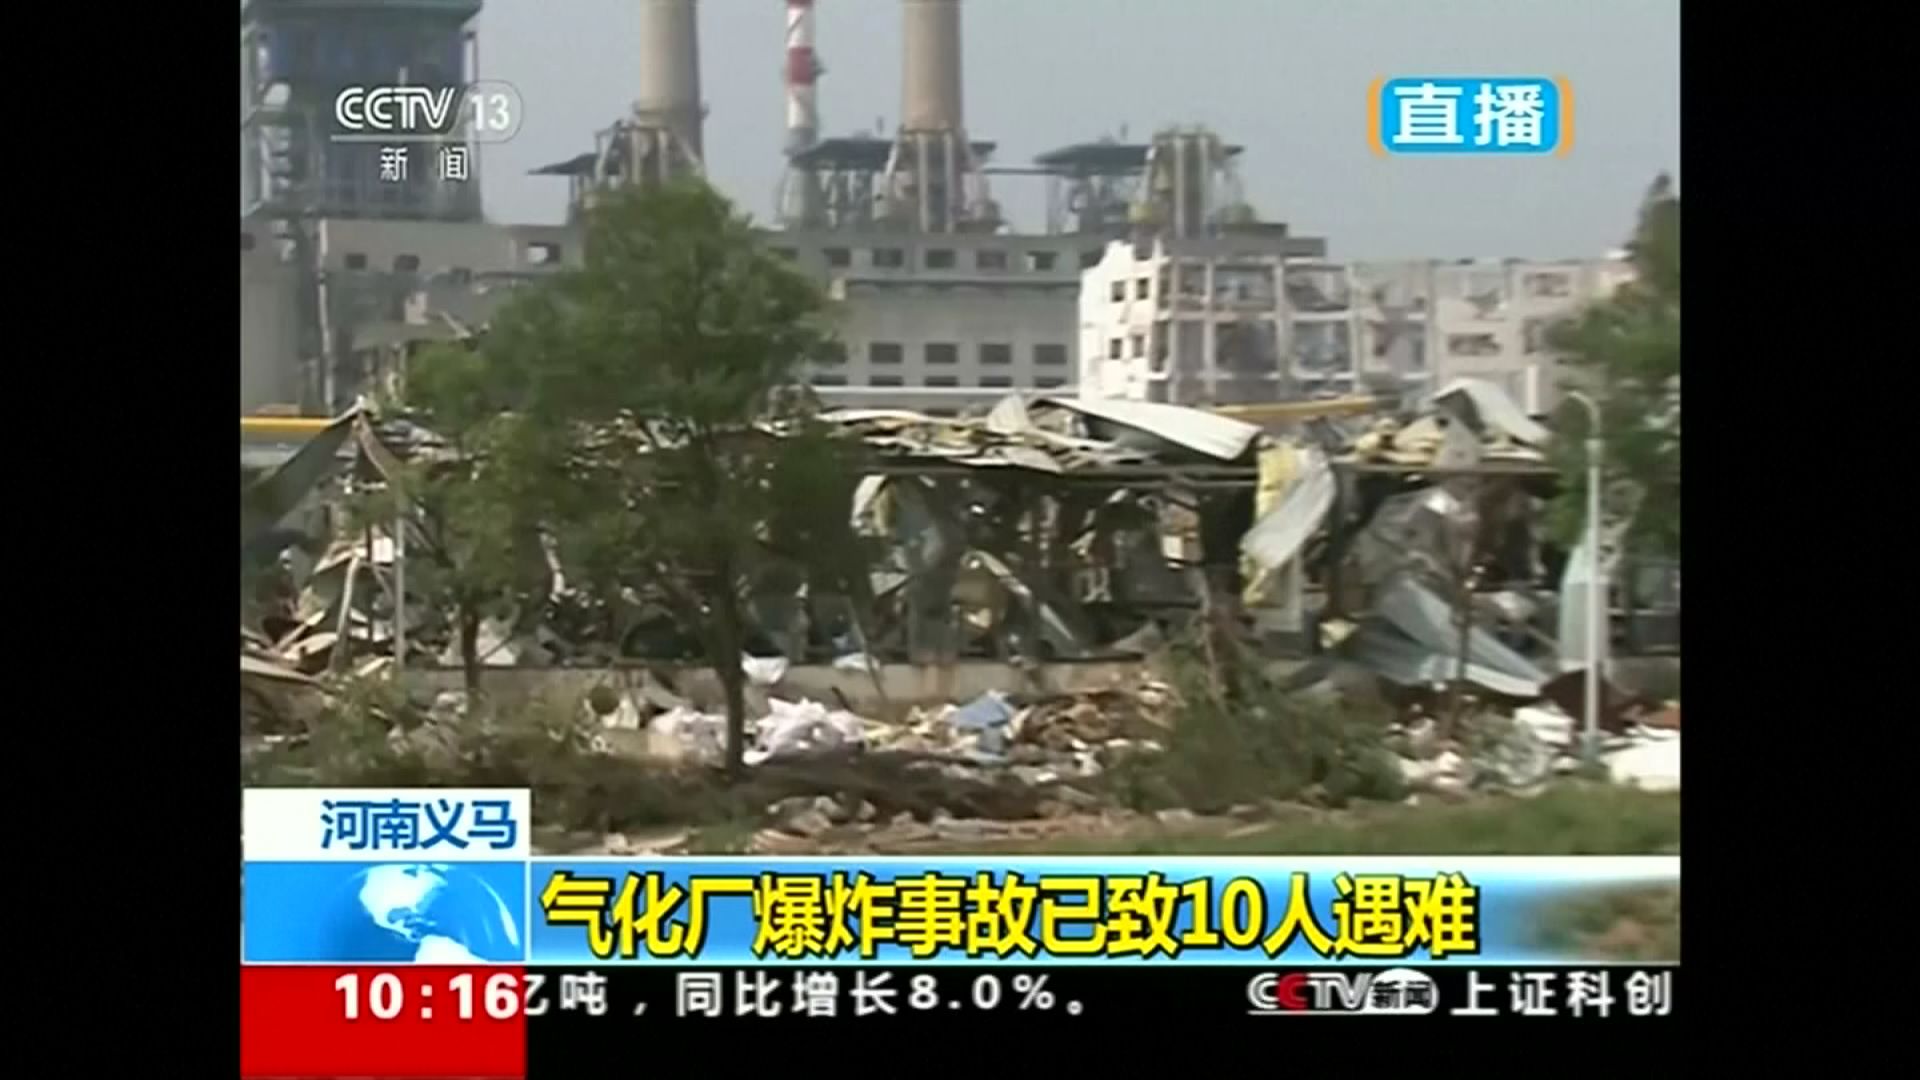 Enorme explosion dans une usine en Chine, le bilan grimpe à 10 morts